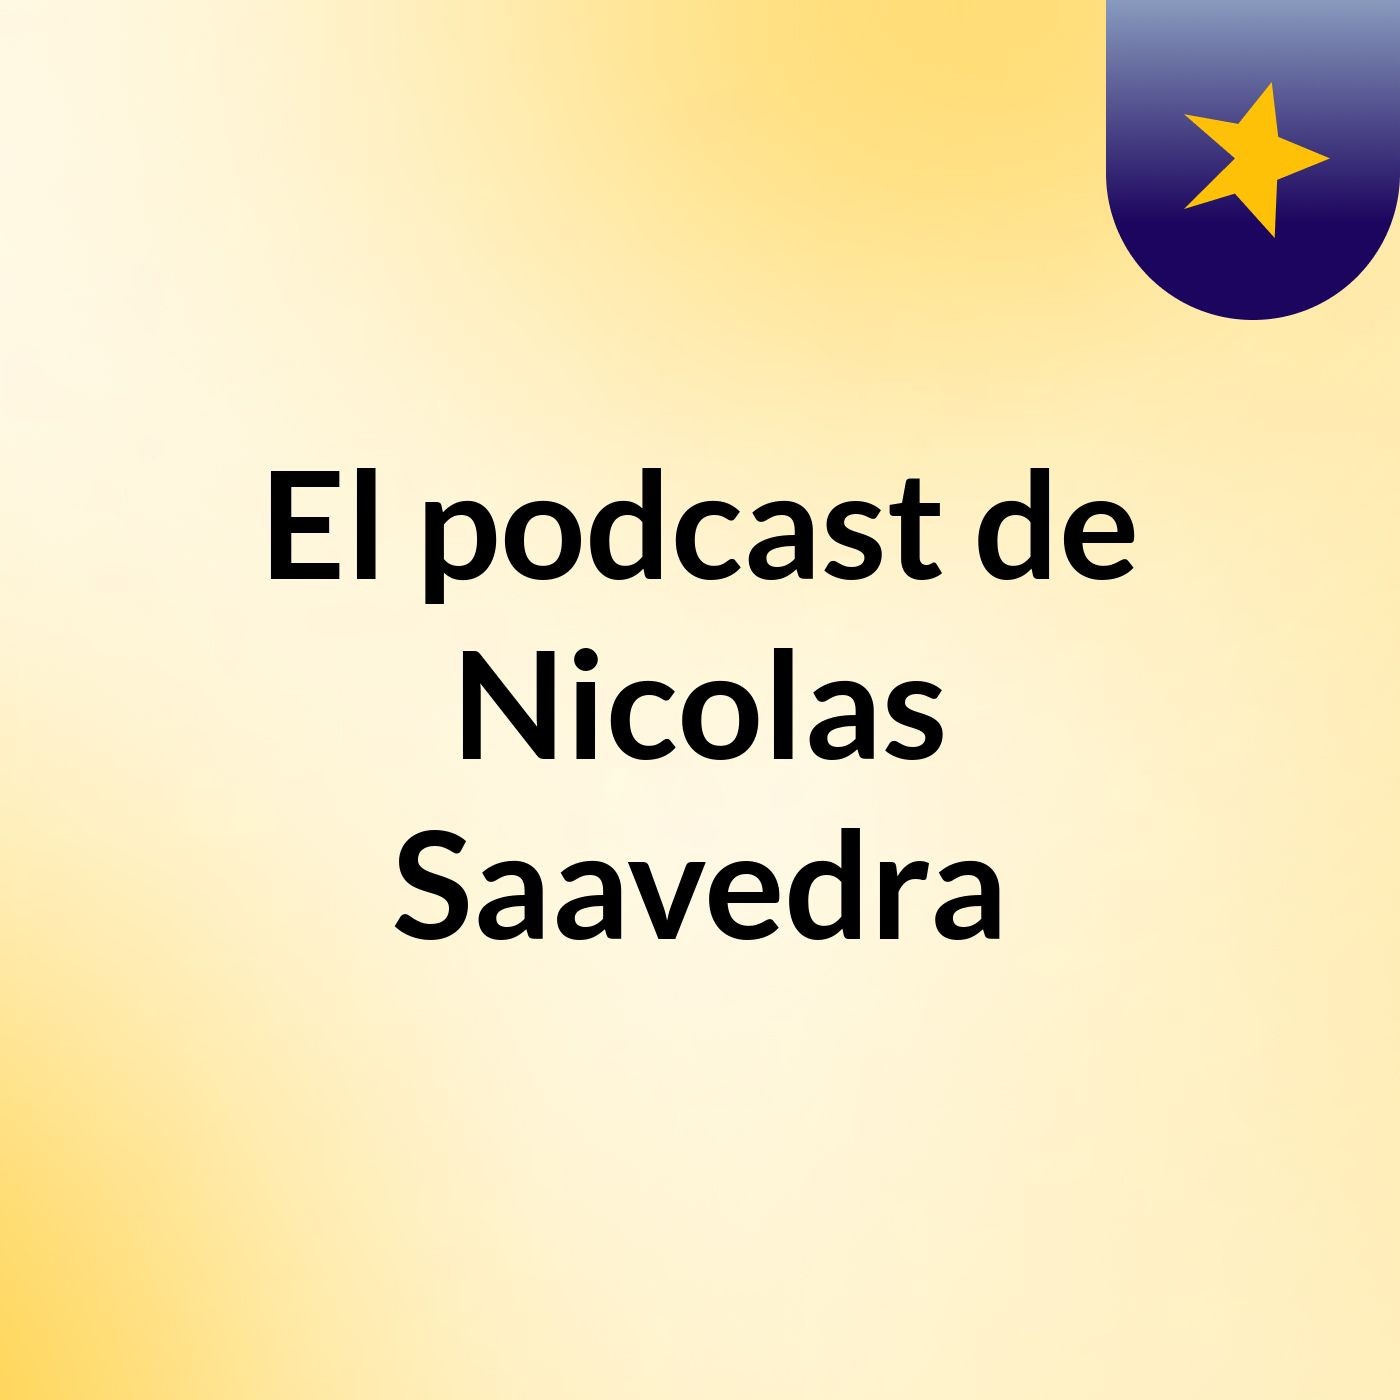 El podcast de Nicolas Saavedra